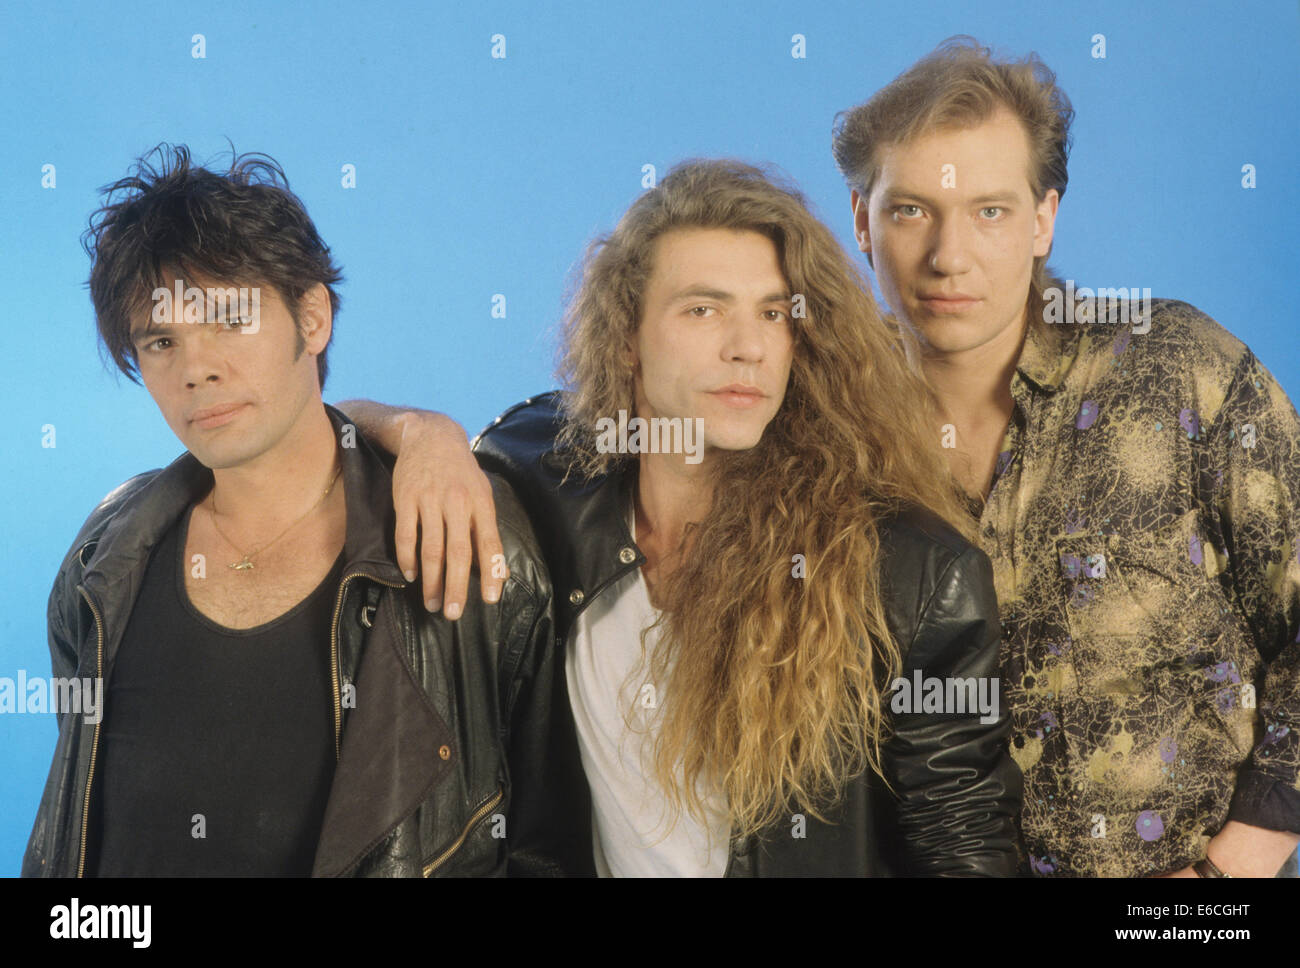 ALPHAVILLE  German synthpop group about  1984. Photo J Czarnowski Stock Photo